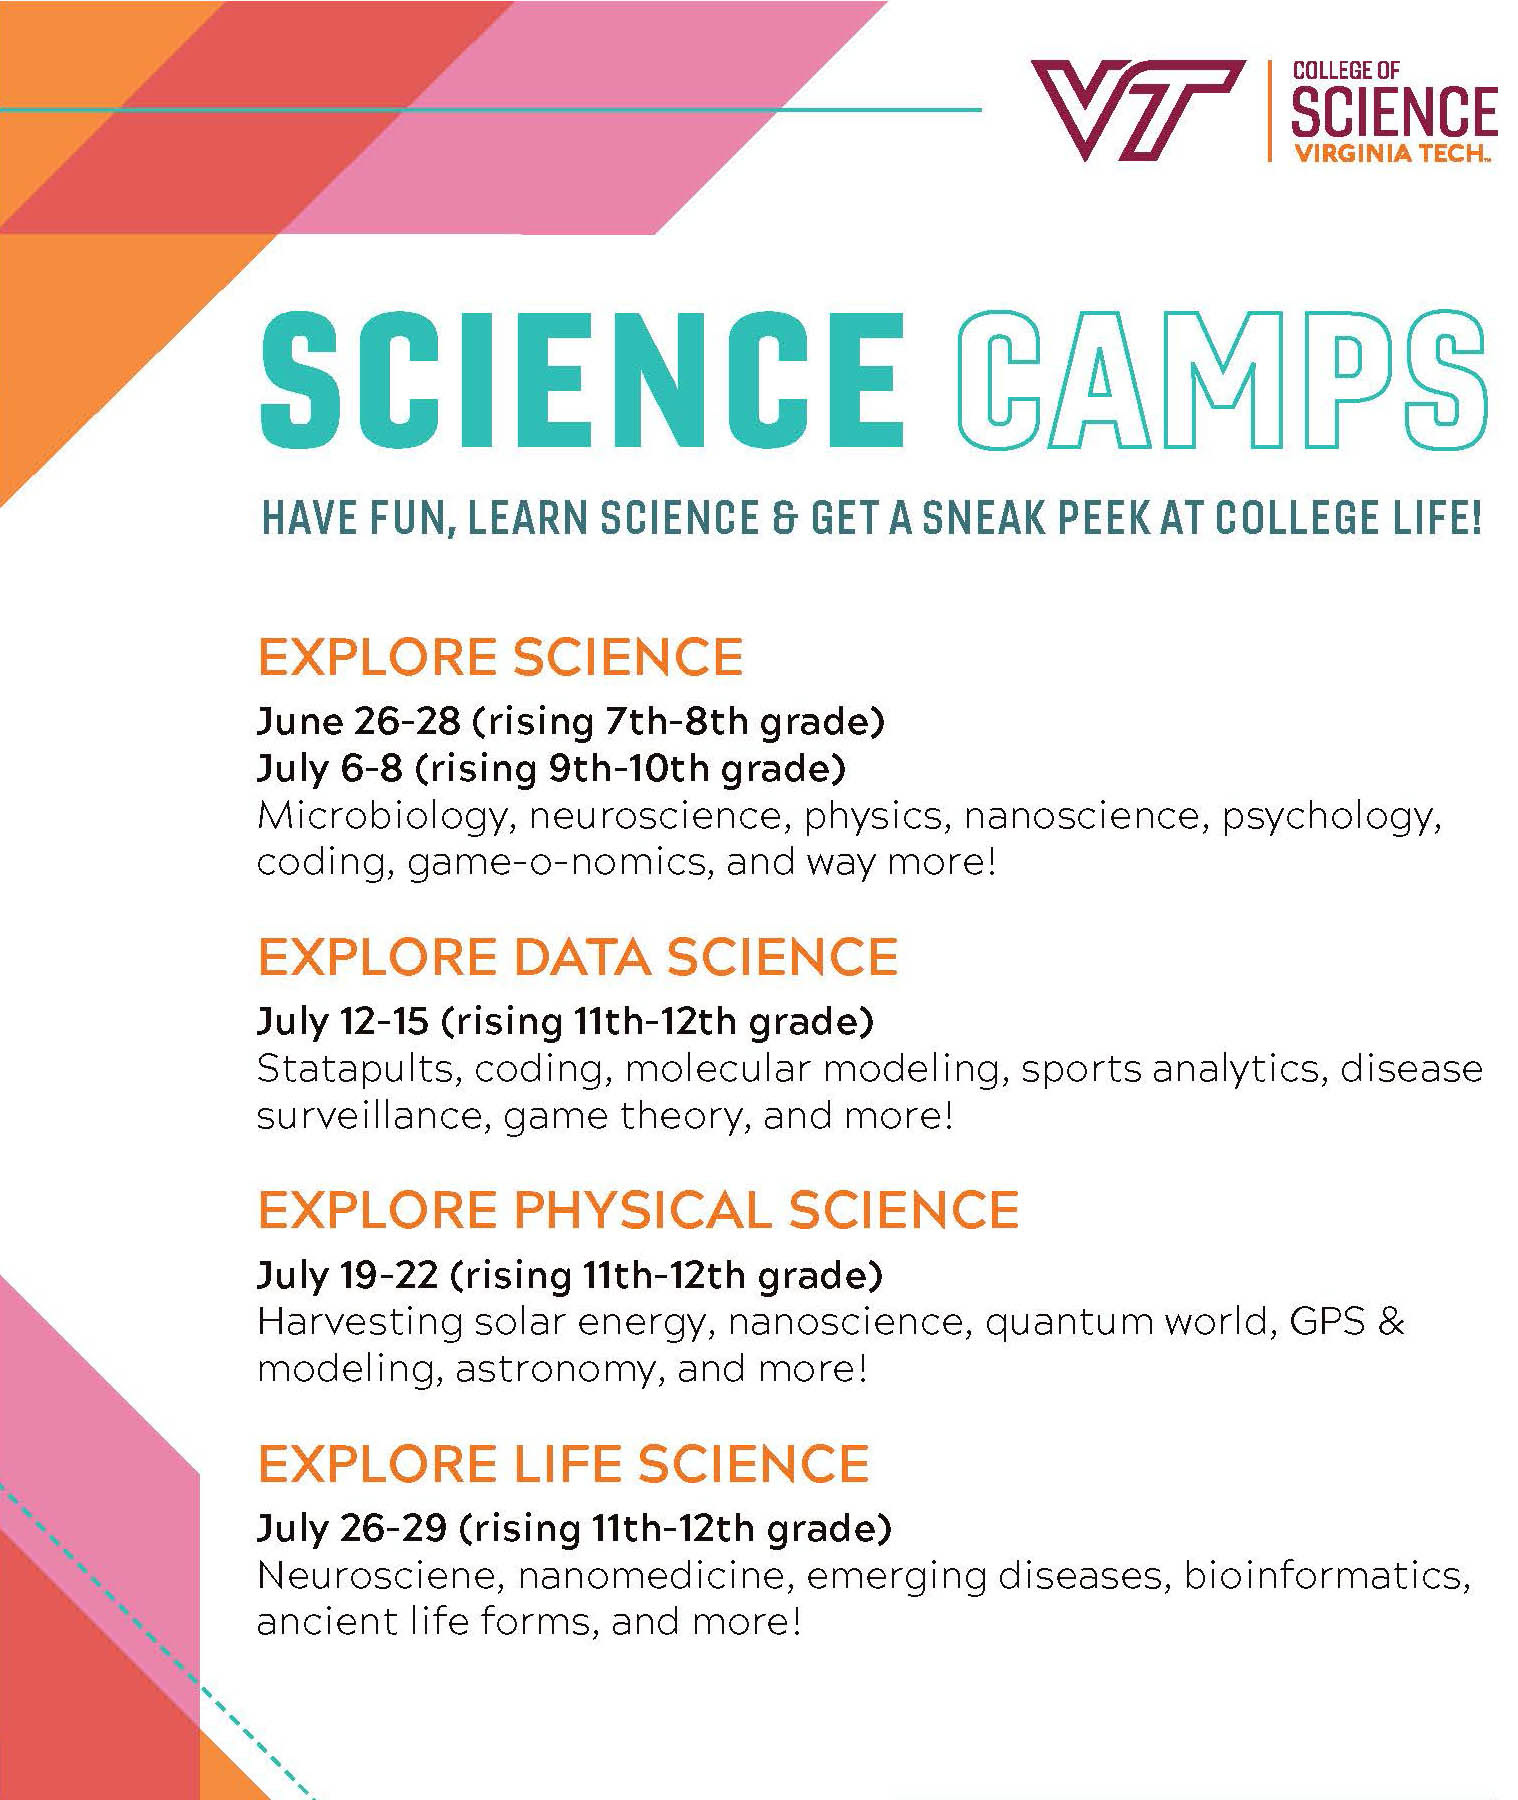 1. Explore Science Camp: June 26-28 (rising 7th-8th grade) + July 6-8 (rising 9th-10th grade). 2. Explore Data Science: July 12-15 (rising 11th-12th grade). 3. Explore Physical Science: July 19-22 (rising 11th-12th grade). 4. Explore Life Science: July 26-29 (rising 11th-12th grade).